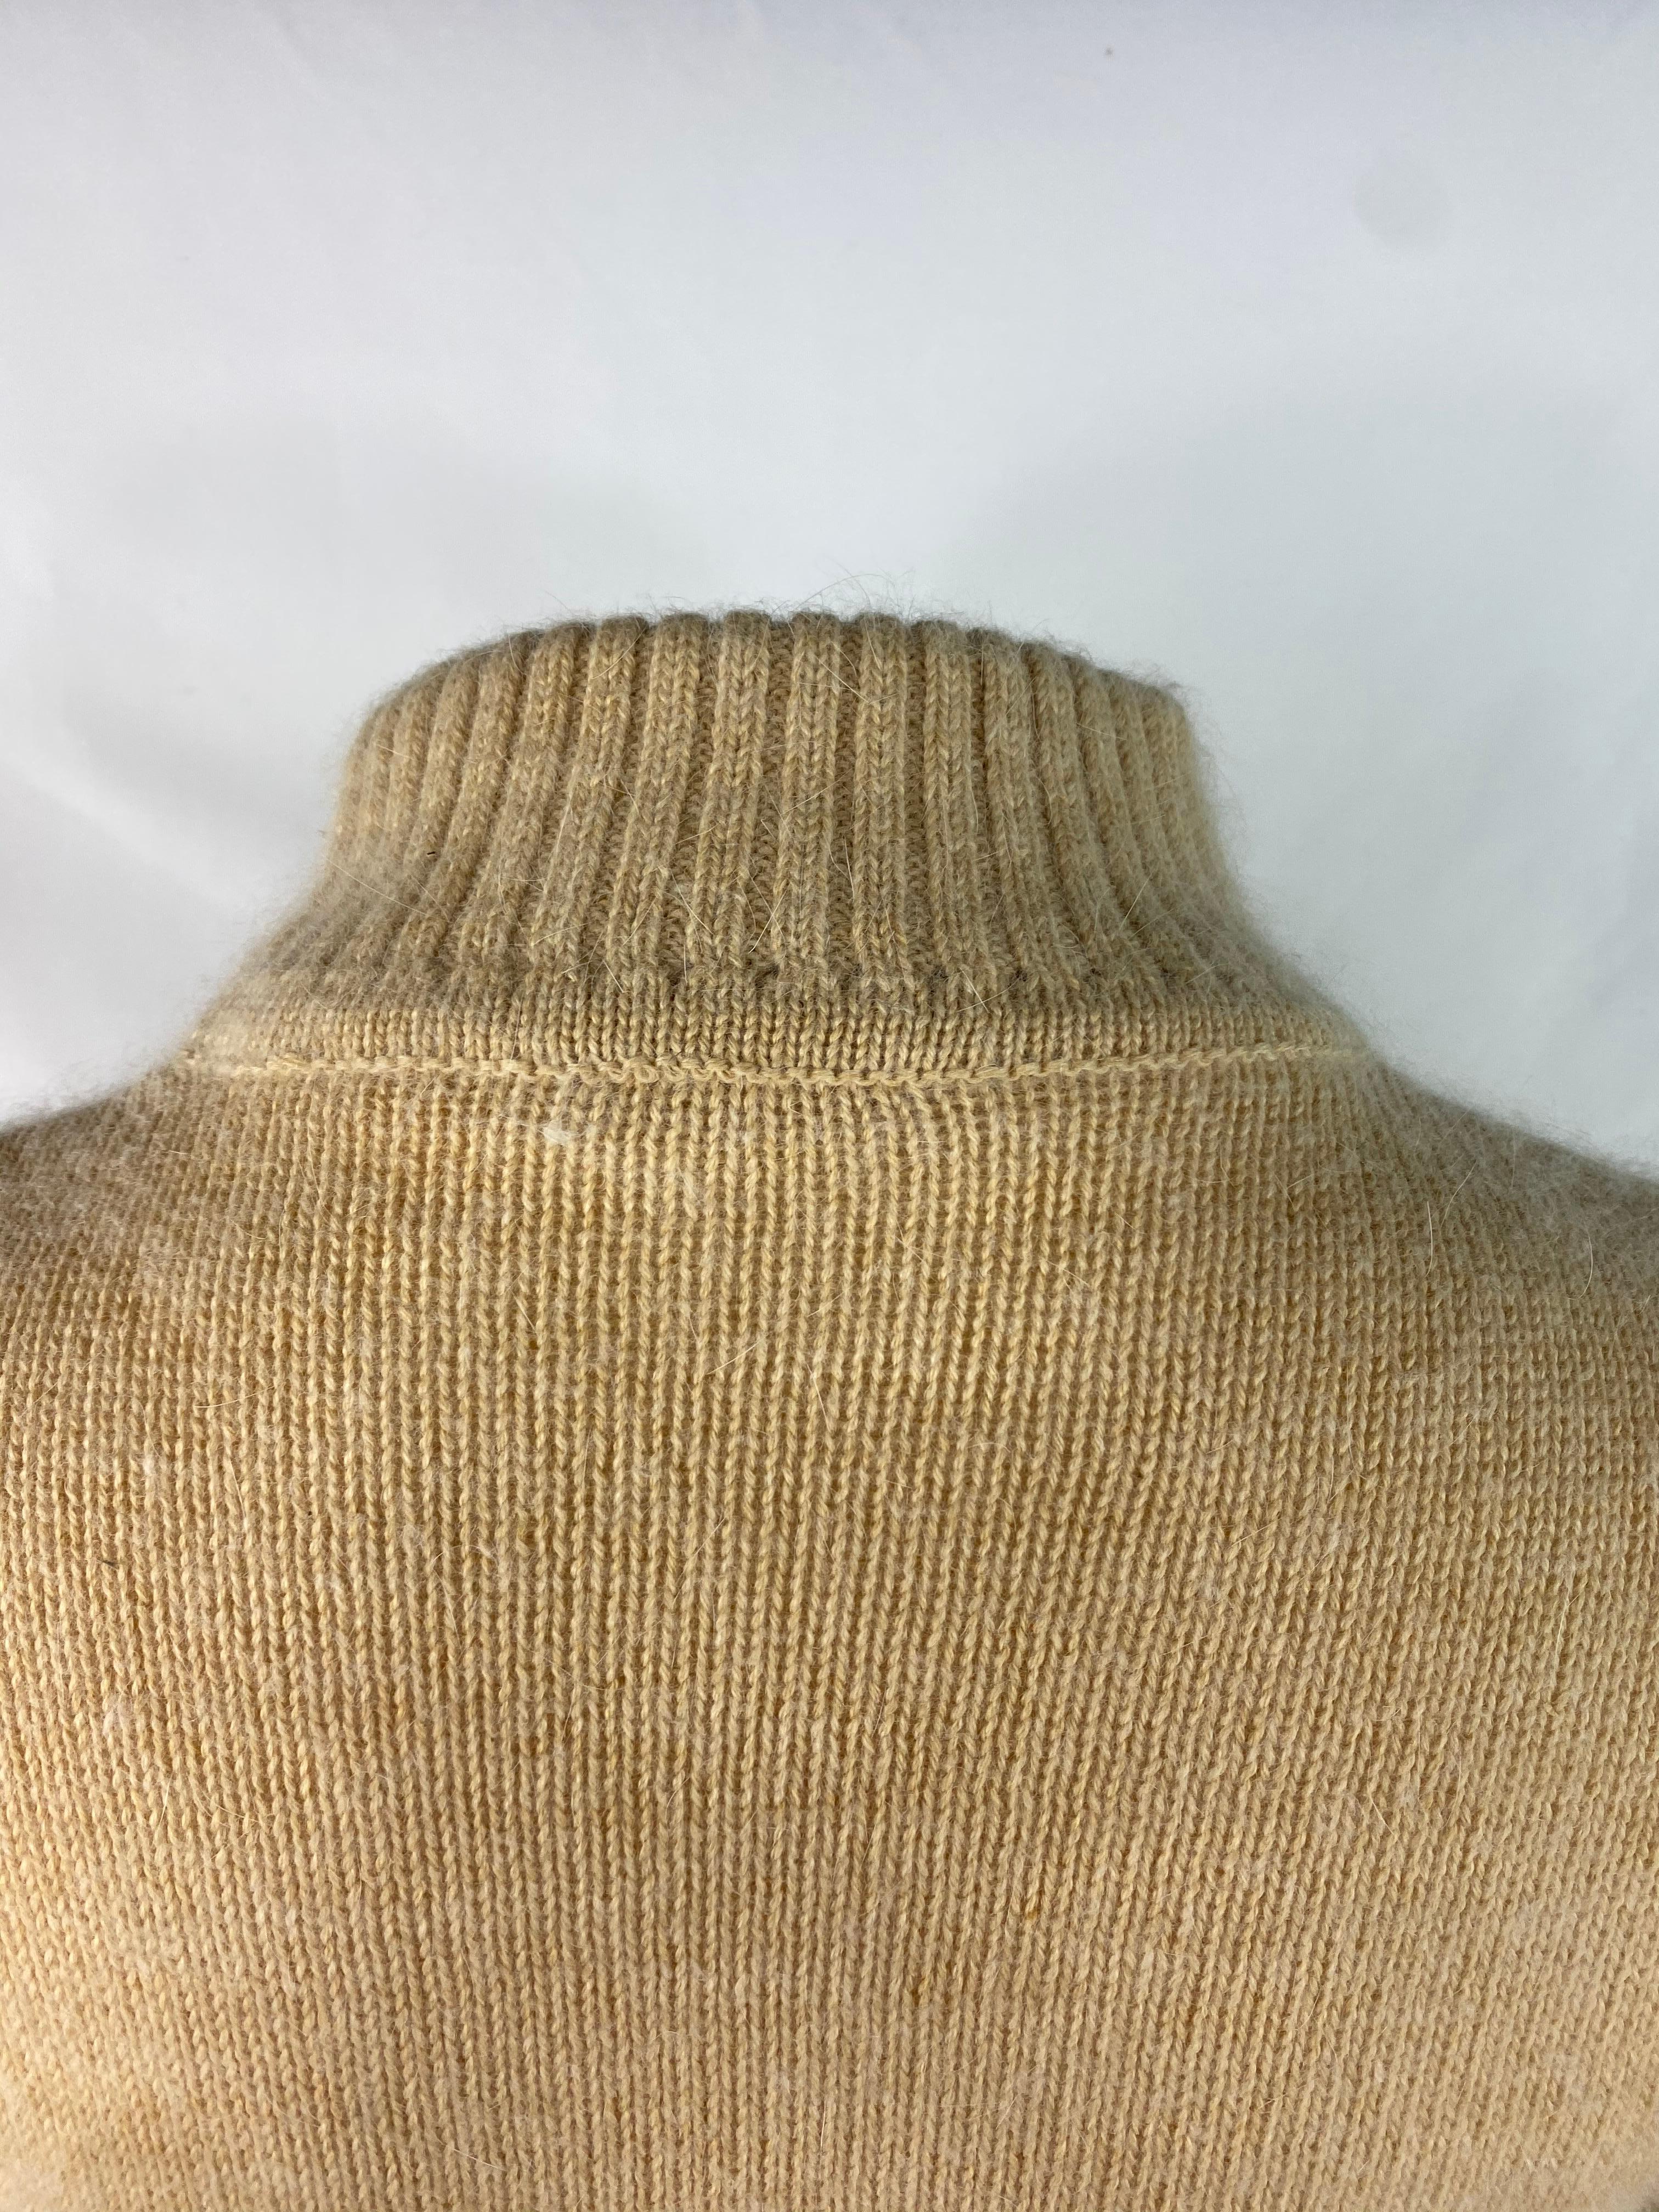 Courreges Paris Beige Knit Wool Sweater, Size 0 For Sale 1